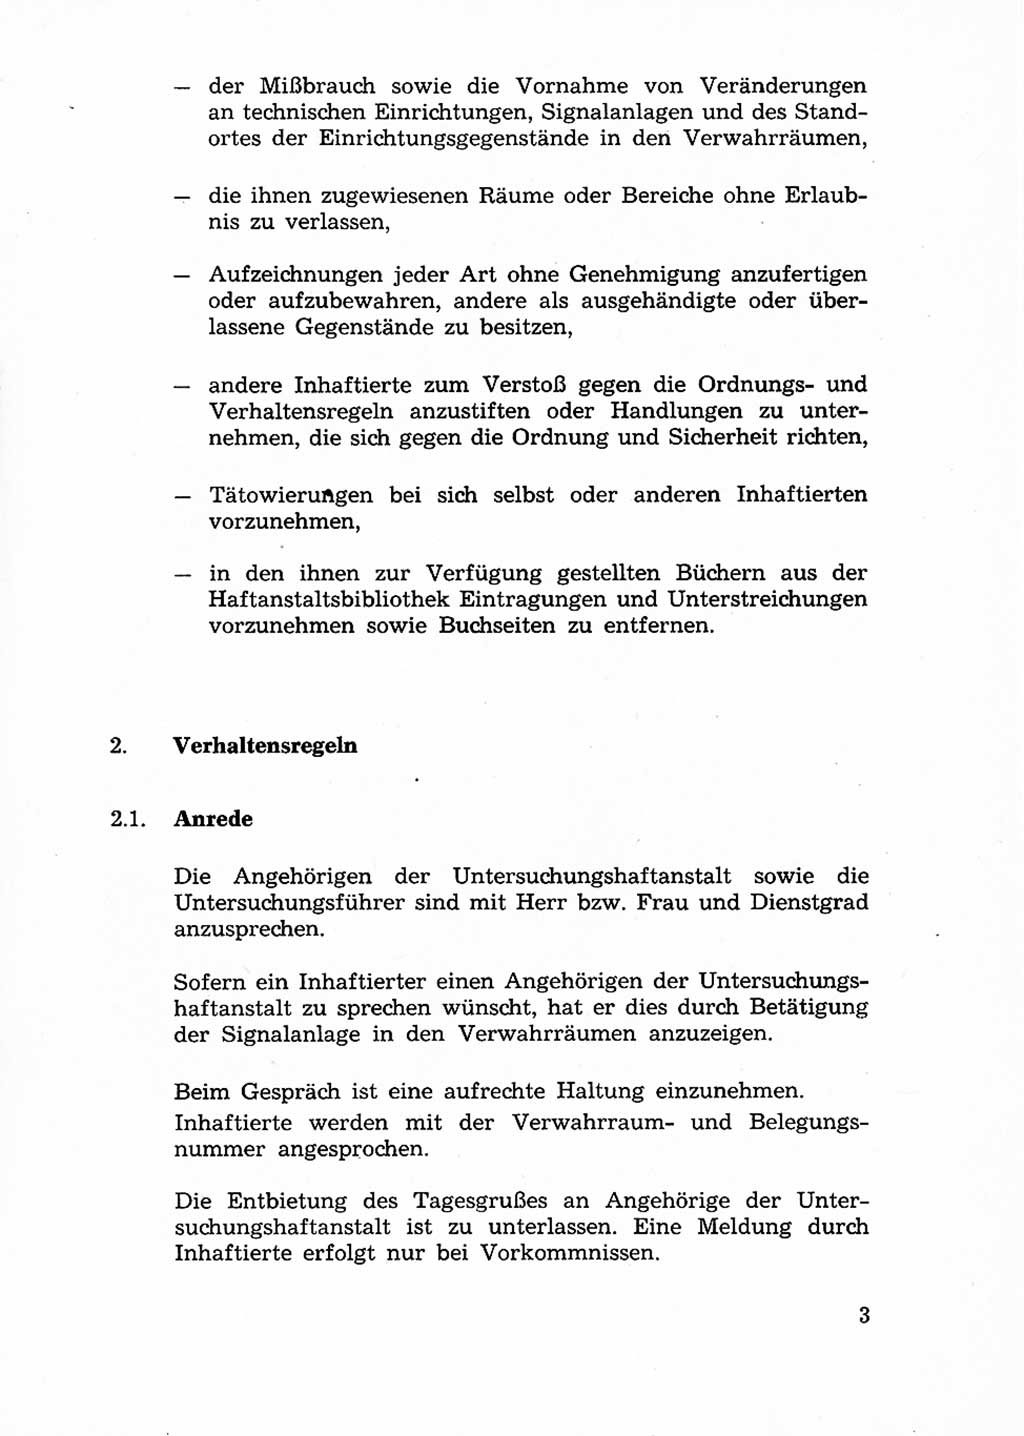 Ordnungs- und Verhaltensregeln (Hausordnung) für Inhaftierte in den Untersuchungshaftanstalten (UHA) [Ministerium für Staatssicherheit (MfS), Deutsche Demokratische Republik (DDR)] 1971, Seite 3 (H.-Ordn. UHA MfS DDR 1971, S. 3)